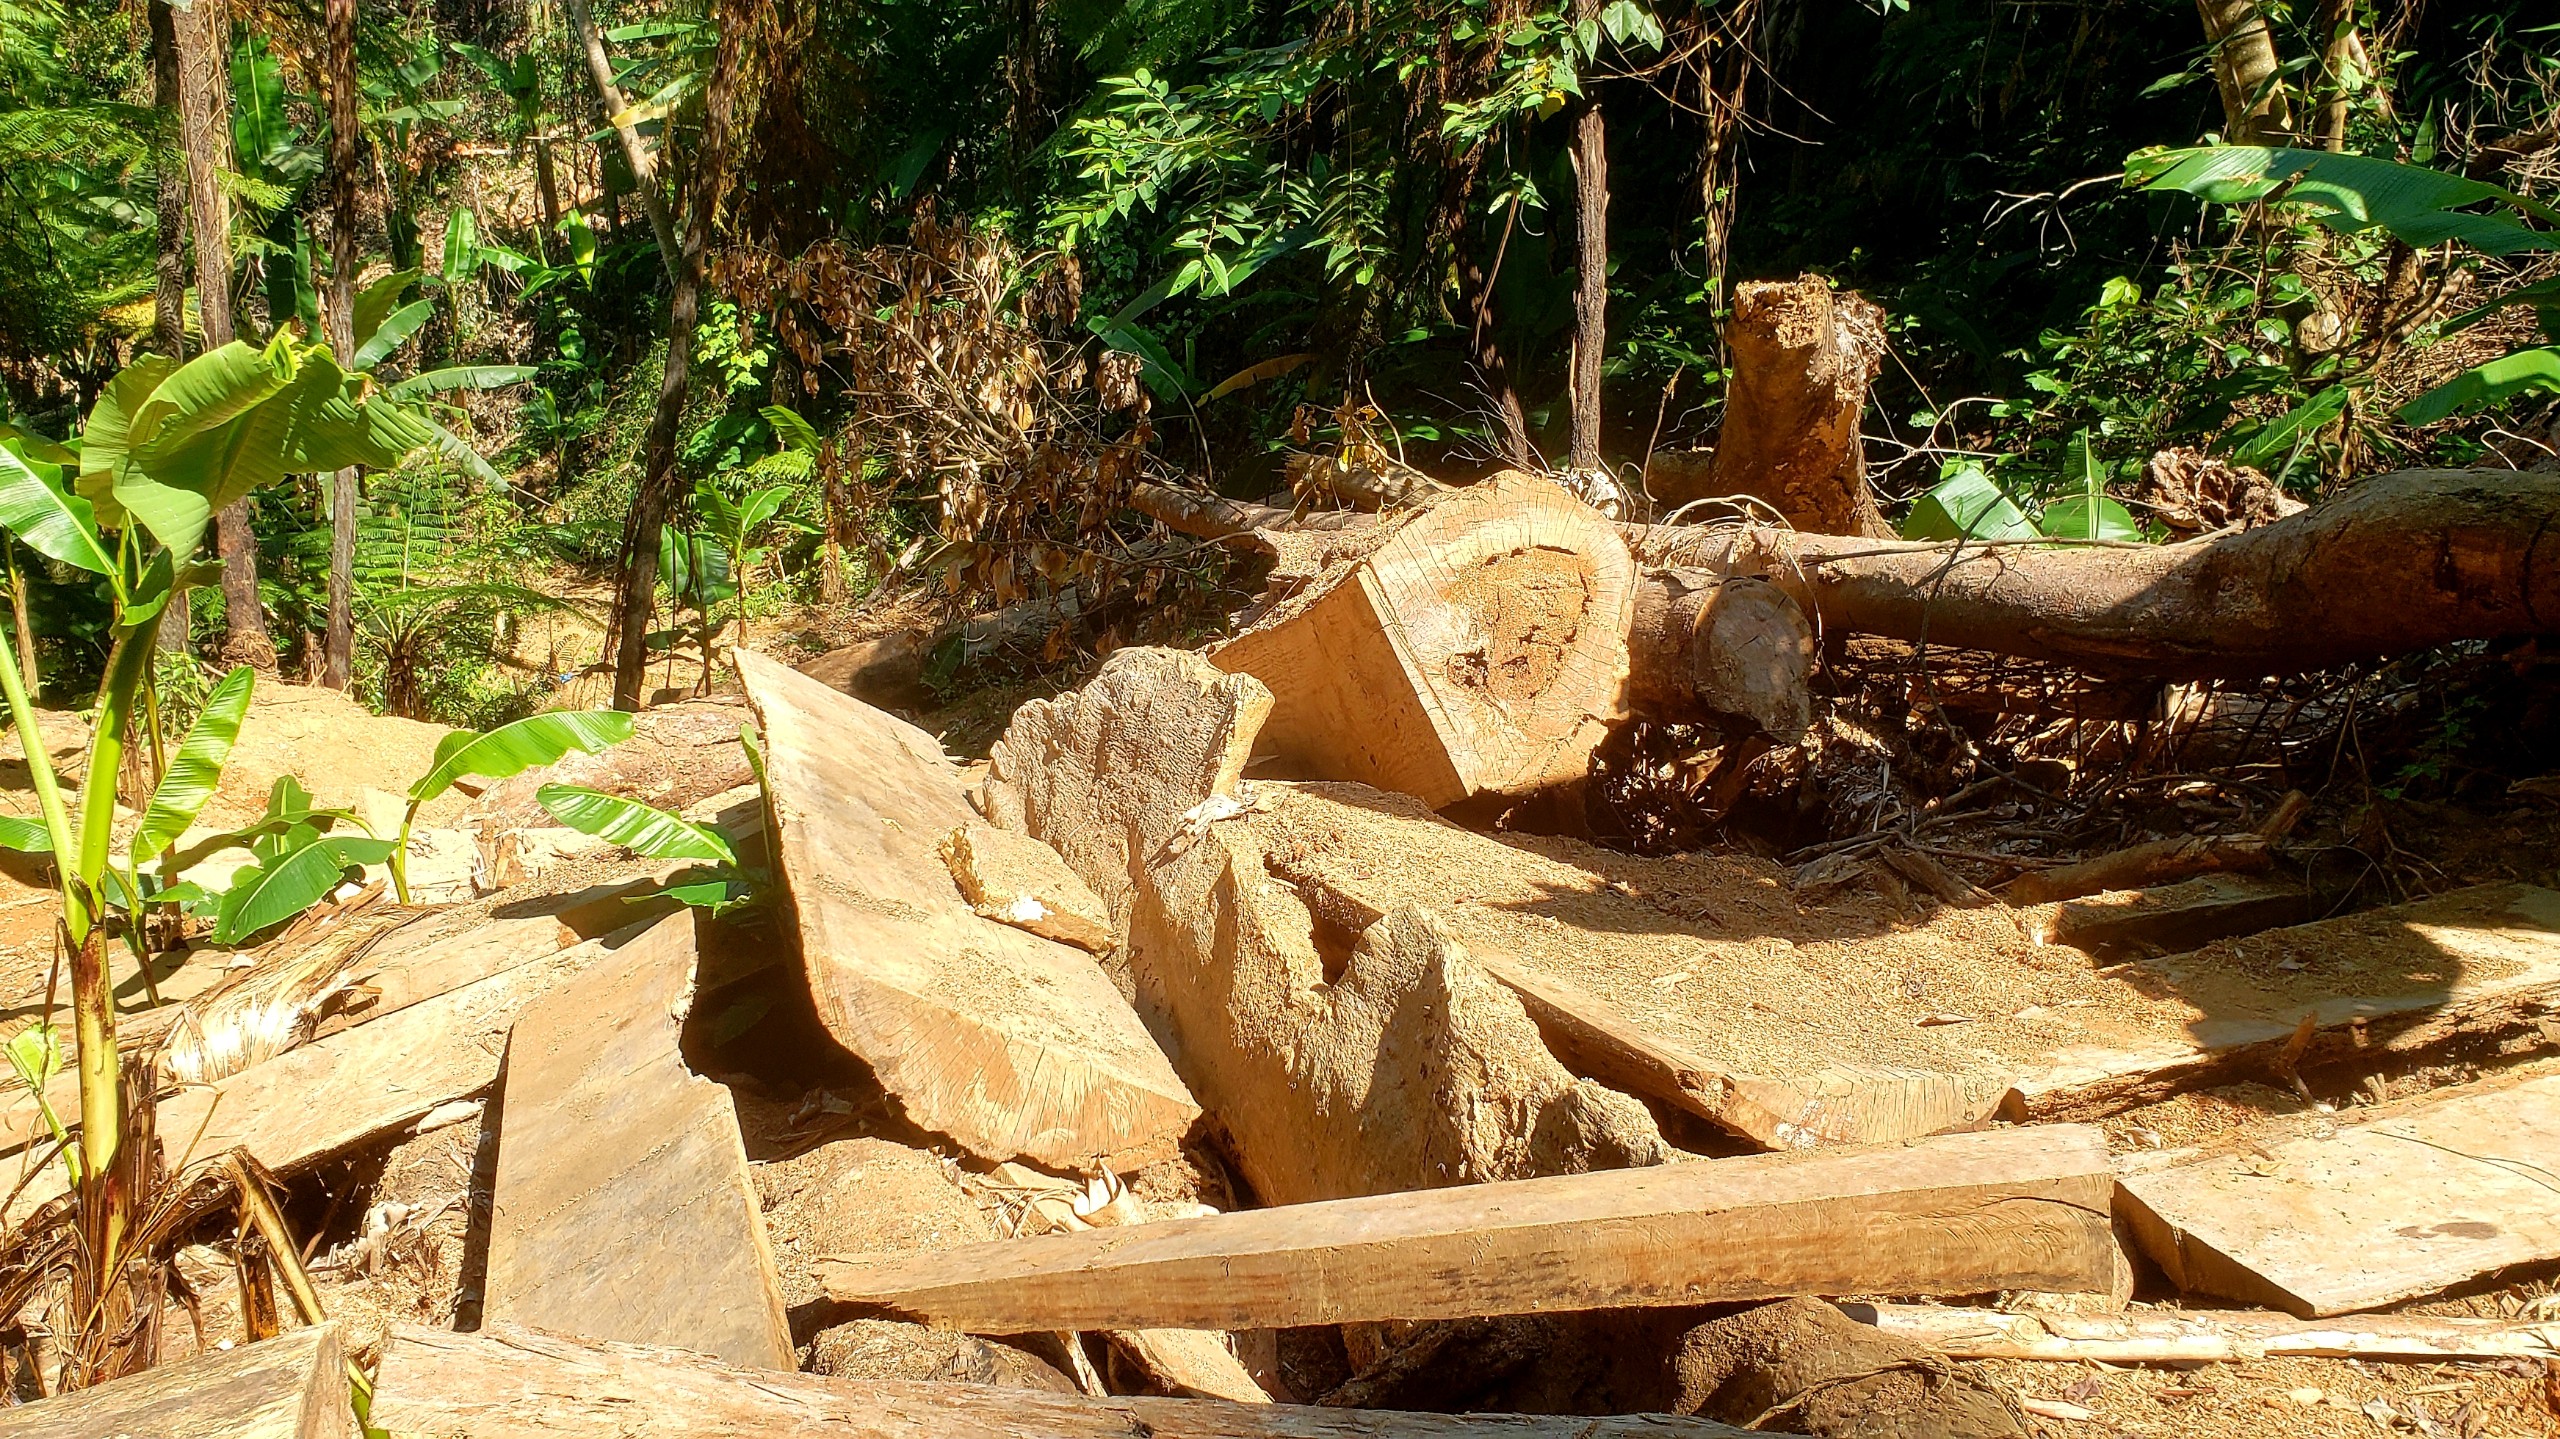 Môi trường - Hiện trường tan hoang nhiều cây rừng cổ thụ bị đốn hạ ở Thừa Thiên-Huế (Hình 11).